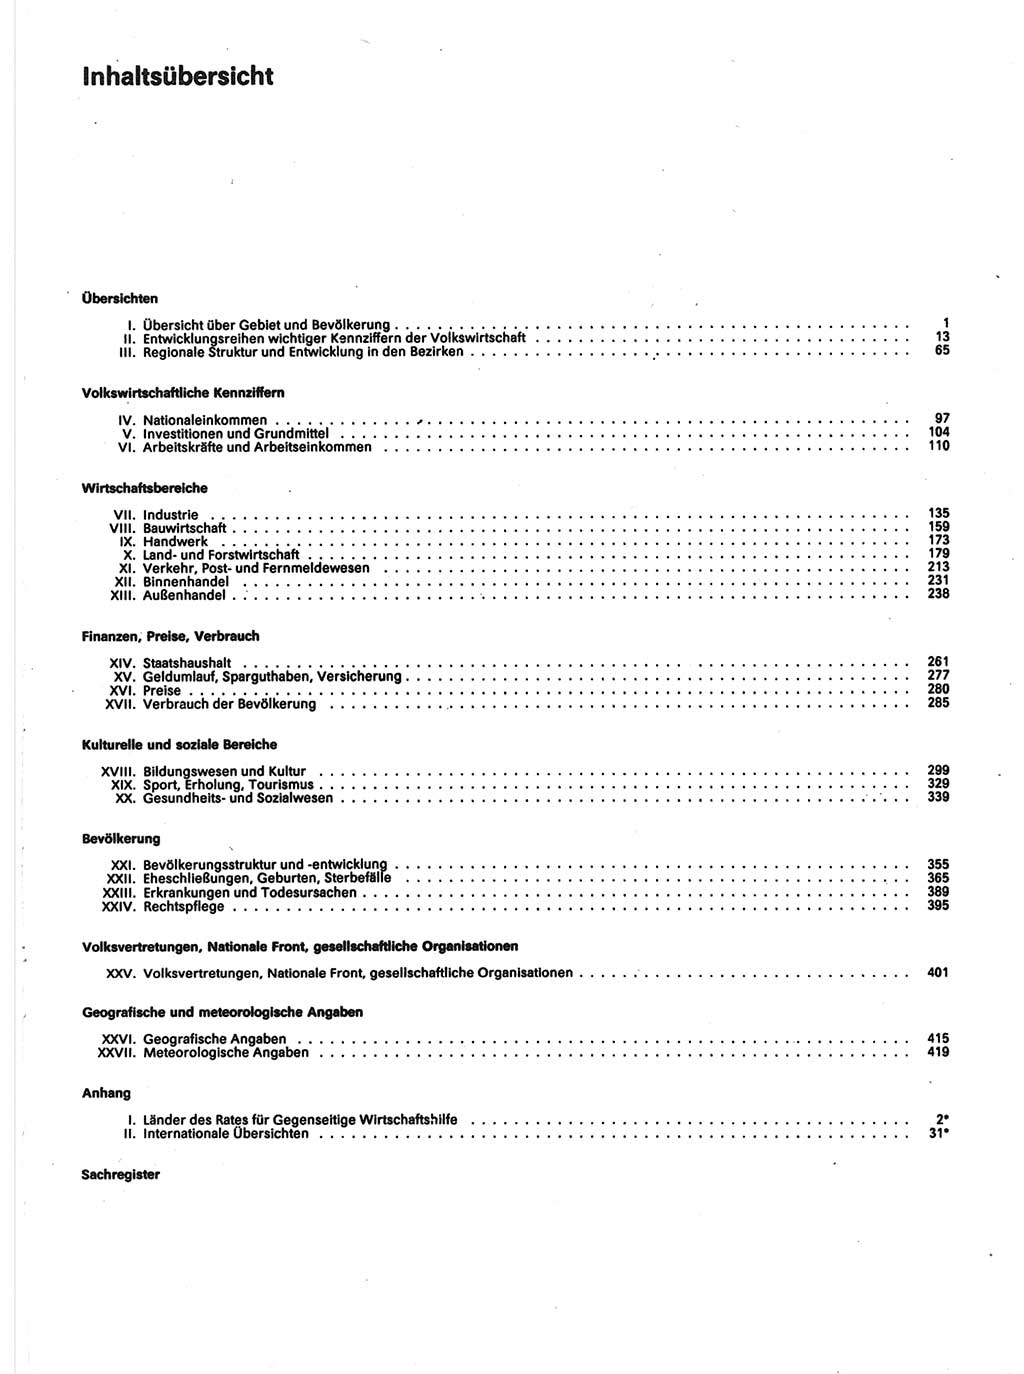 Statistisches Jahrbuch der Deutschen Demokratischen Republik (DDR) 1988, Seite 5 (Stat. Jb. DDR 1988, S. 5)